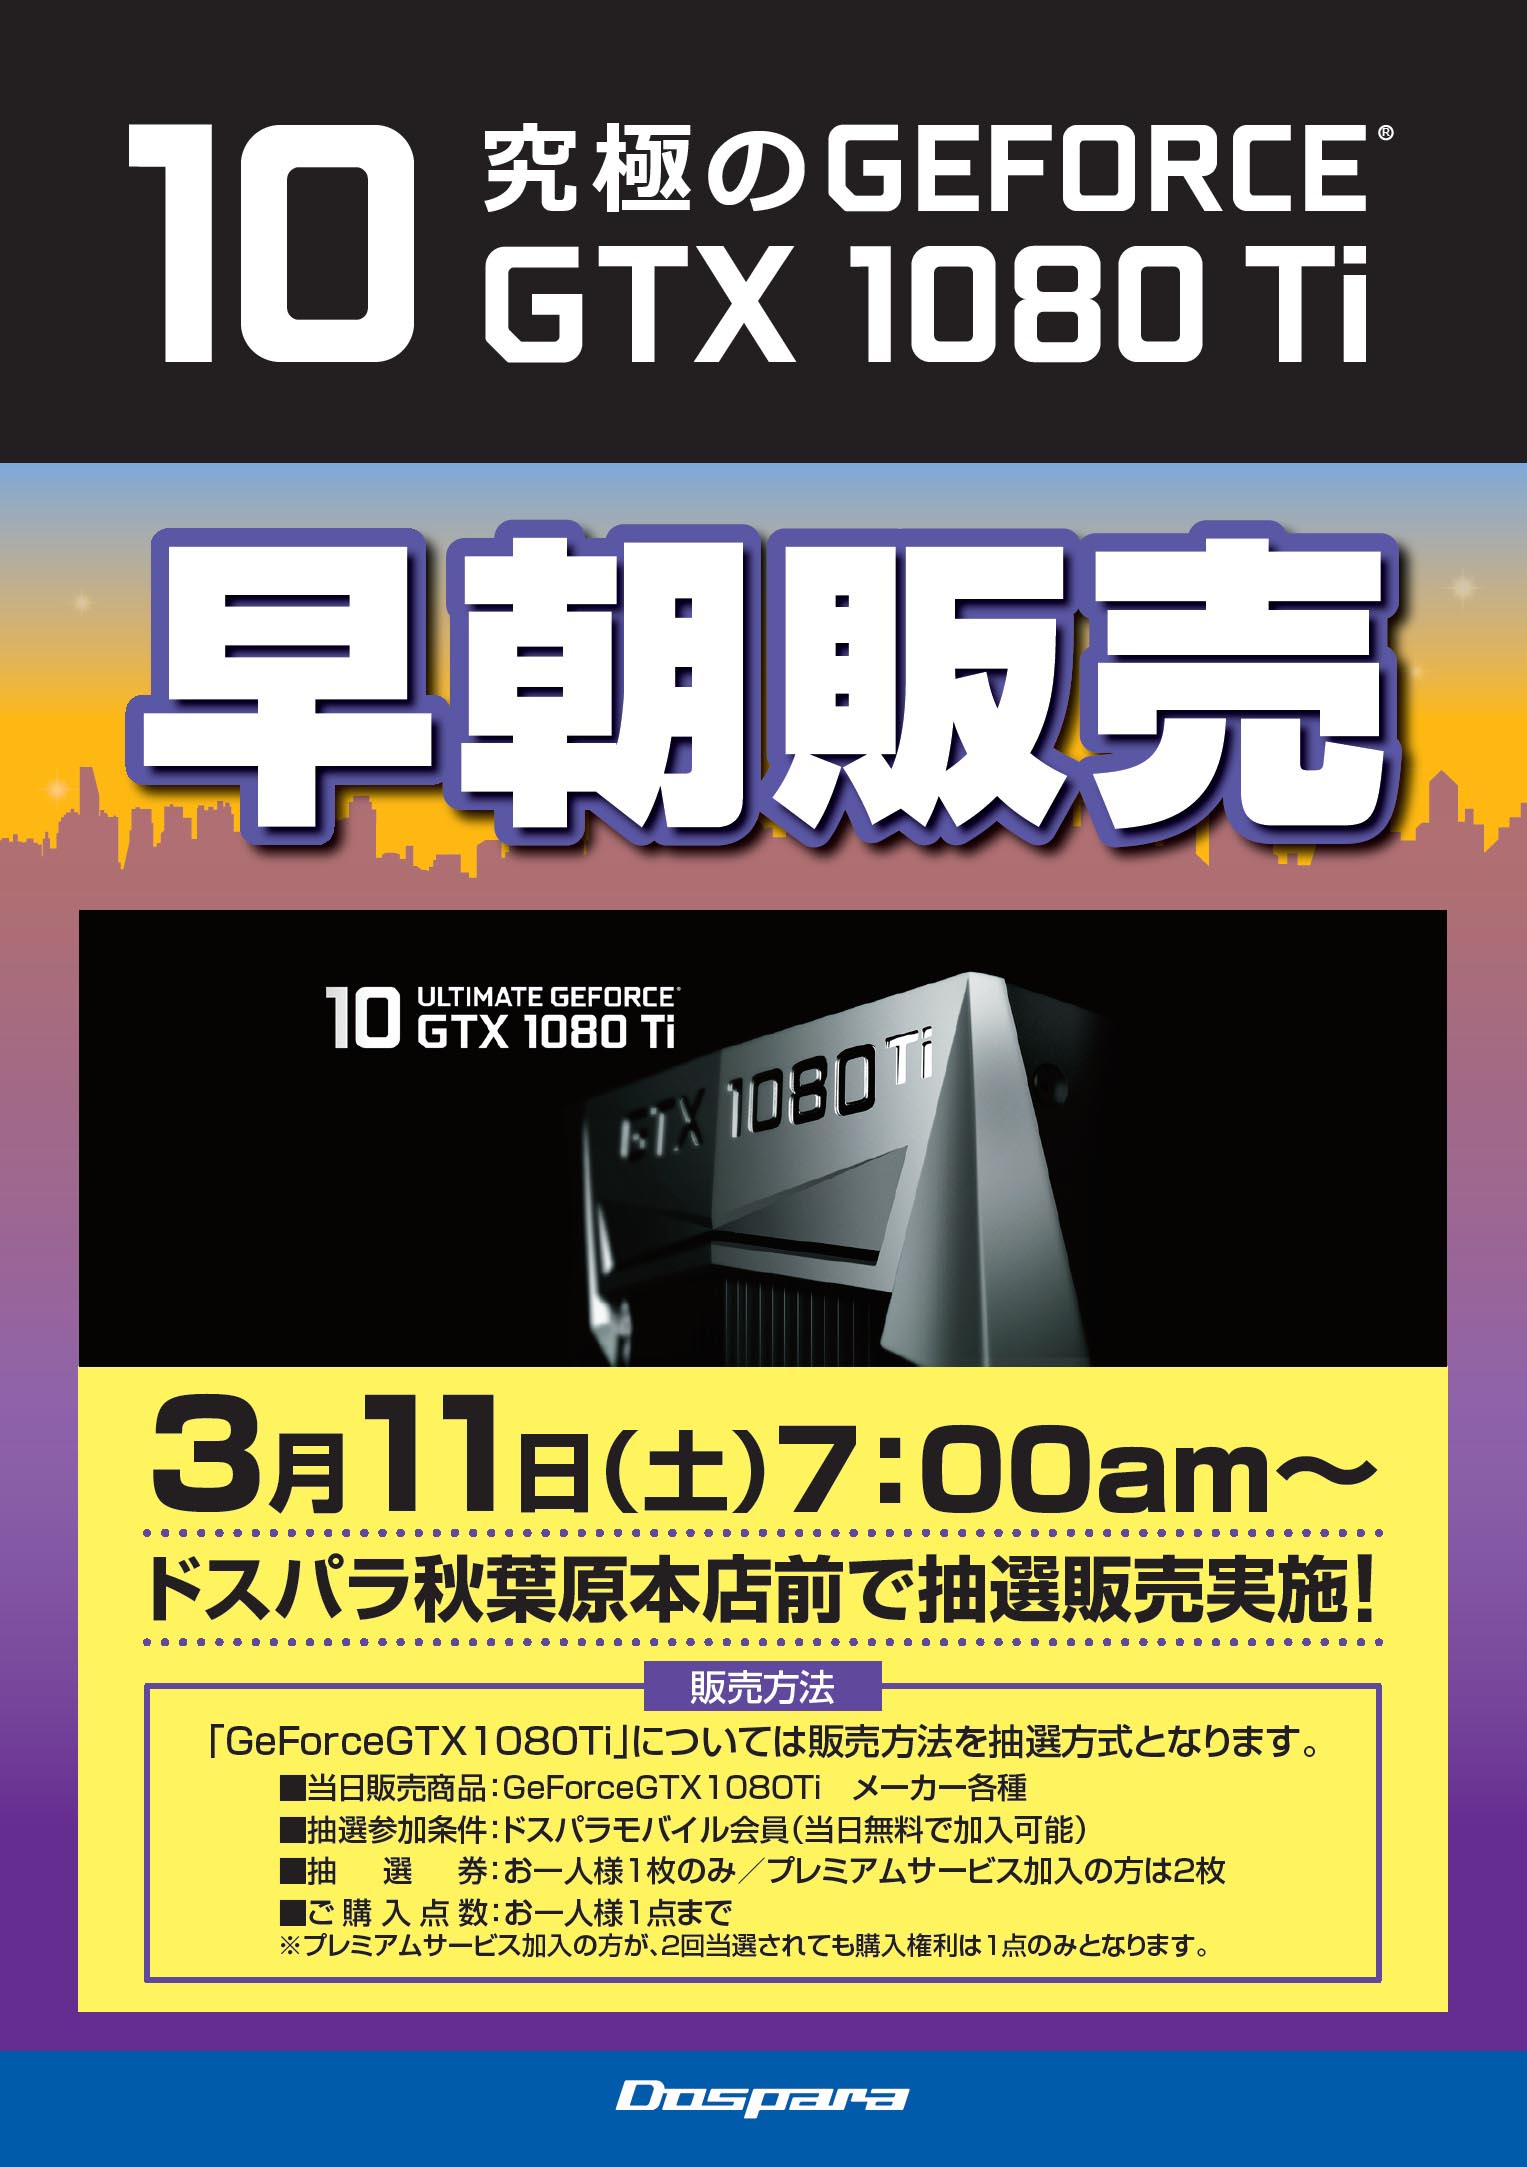 ドスパラ、アキバで「GeForce GTX 1080 Ti」早朝販売会を実施――3月11日 ...